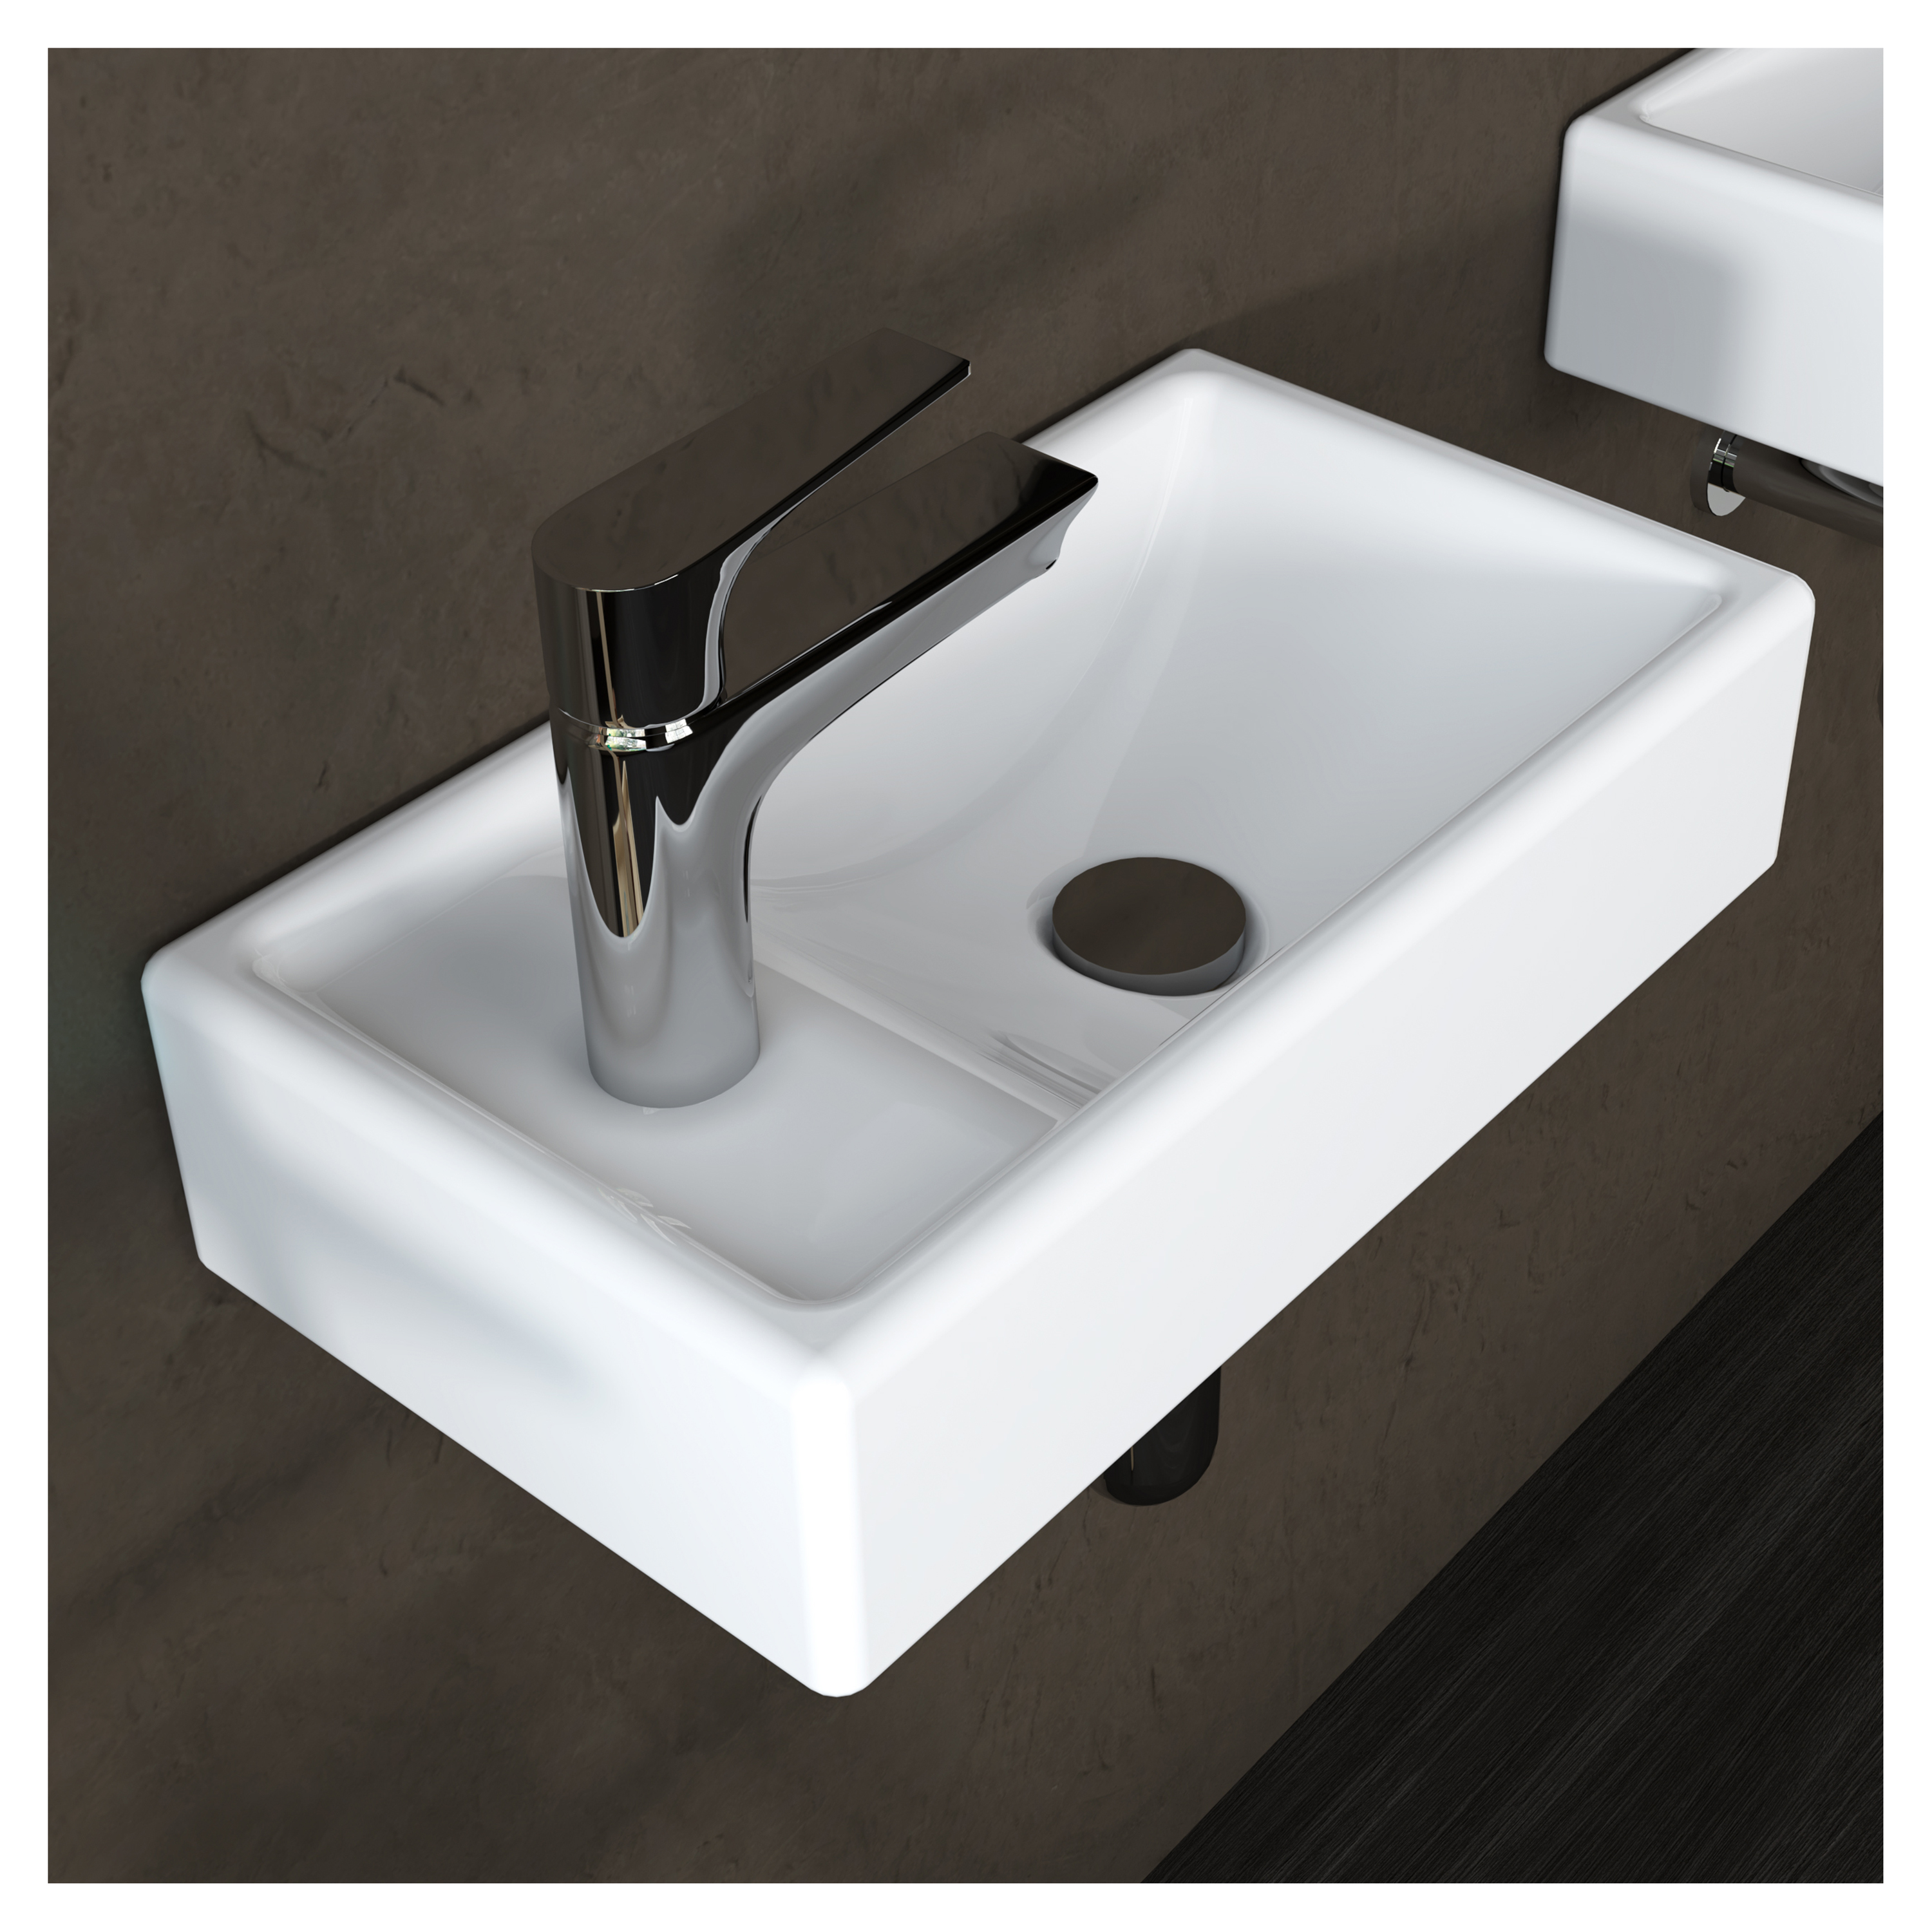 MEJE 16-Zoll-Badezimmer-Eck-Wandwaschbecken, kleines Badezimmerwaschbecken, weißes rechteckiges Keramikwaschbecken (linke Hand)